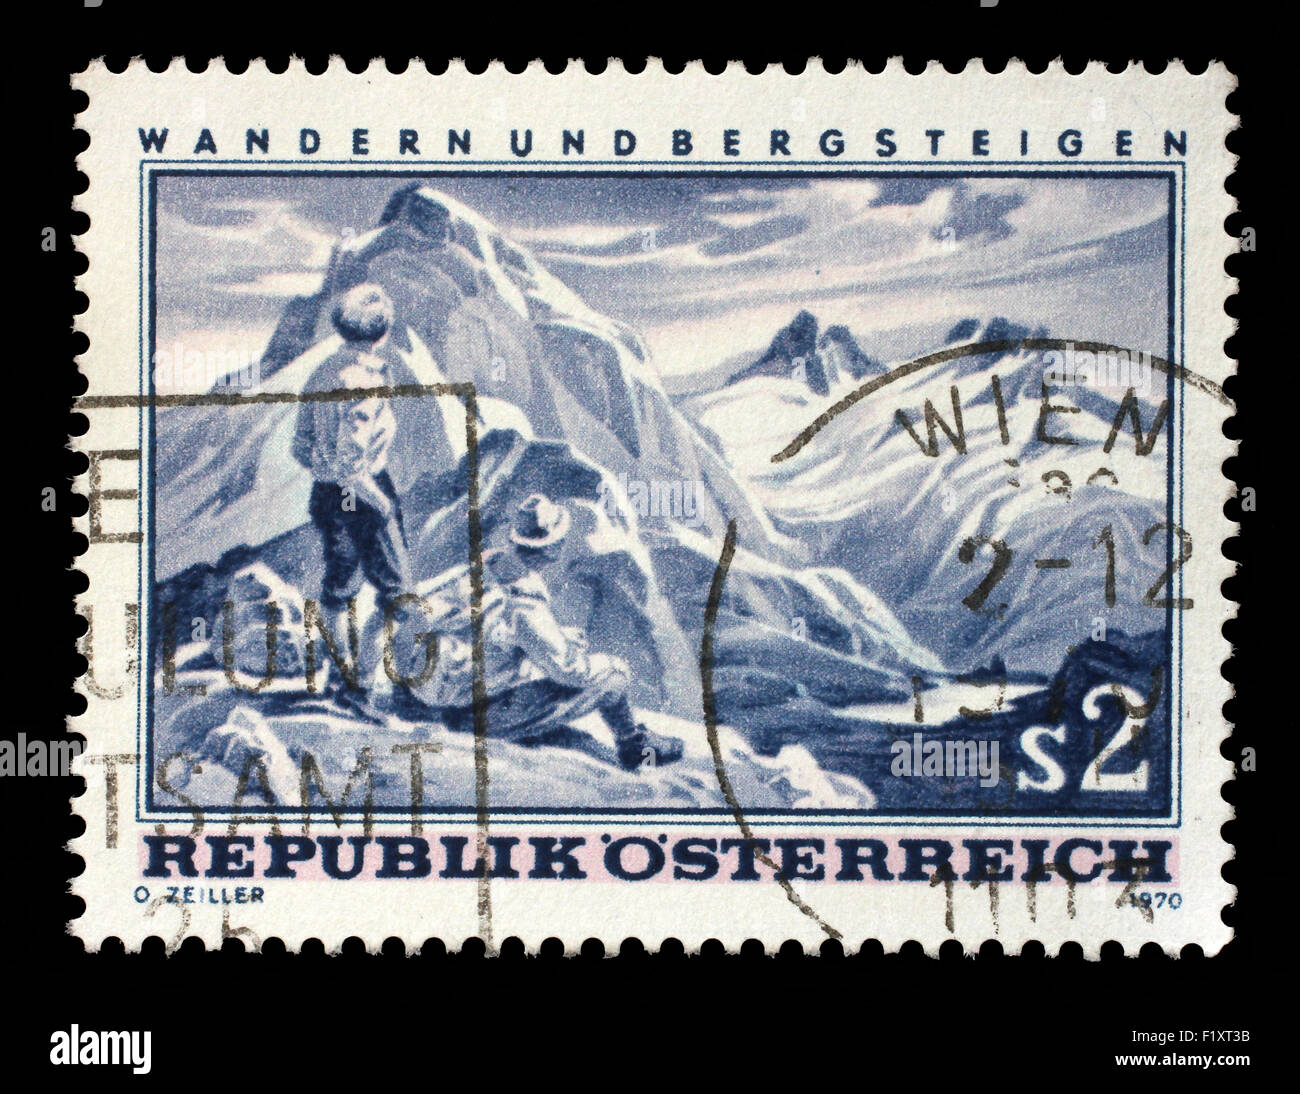 Briefmarke gedruckt in Österreich zeigt Bergszene, Wandern und Bergsteigen in Österreich, ca. 1970 Stockfoto